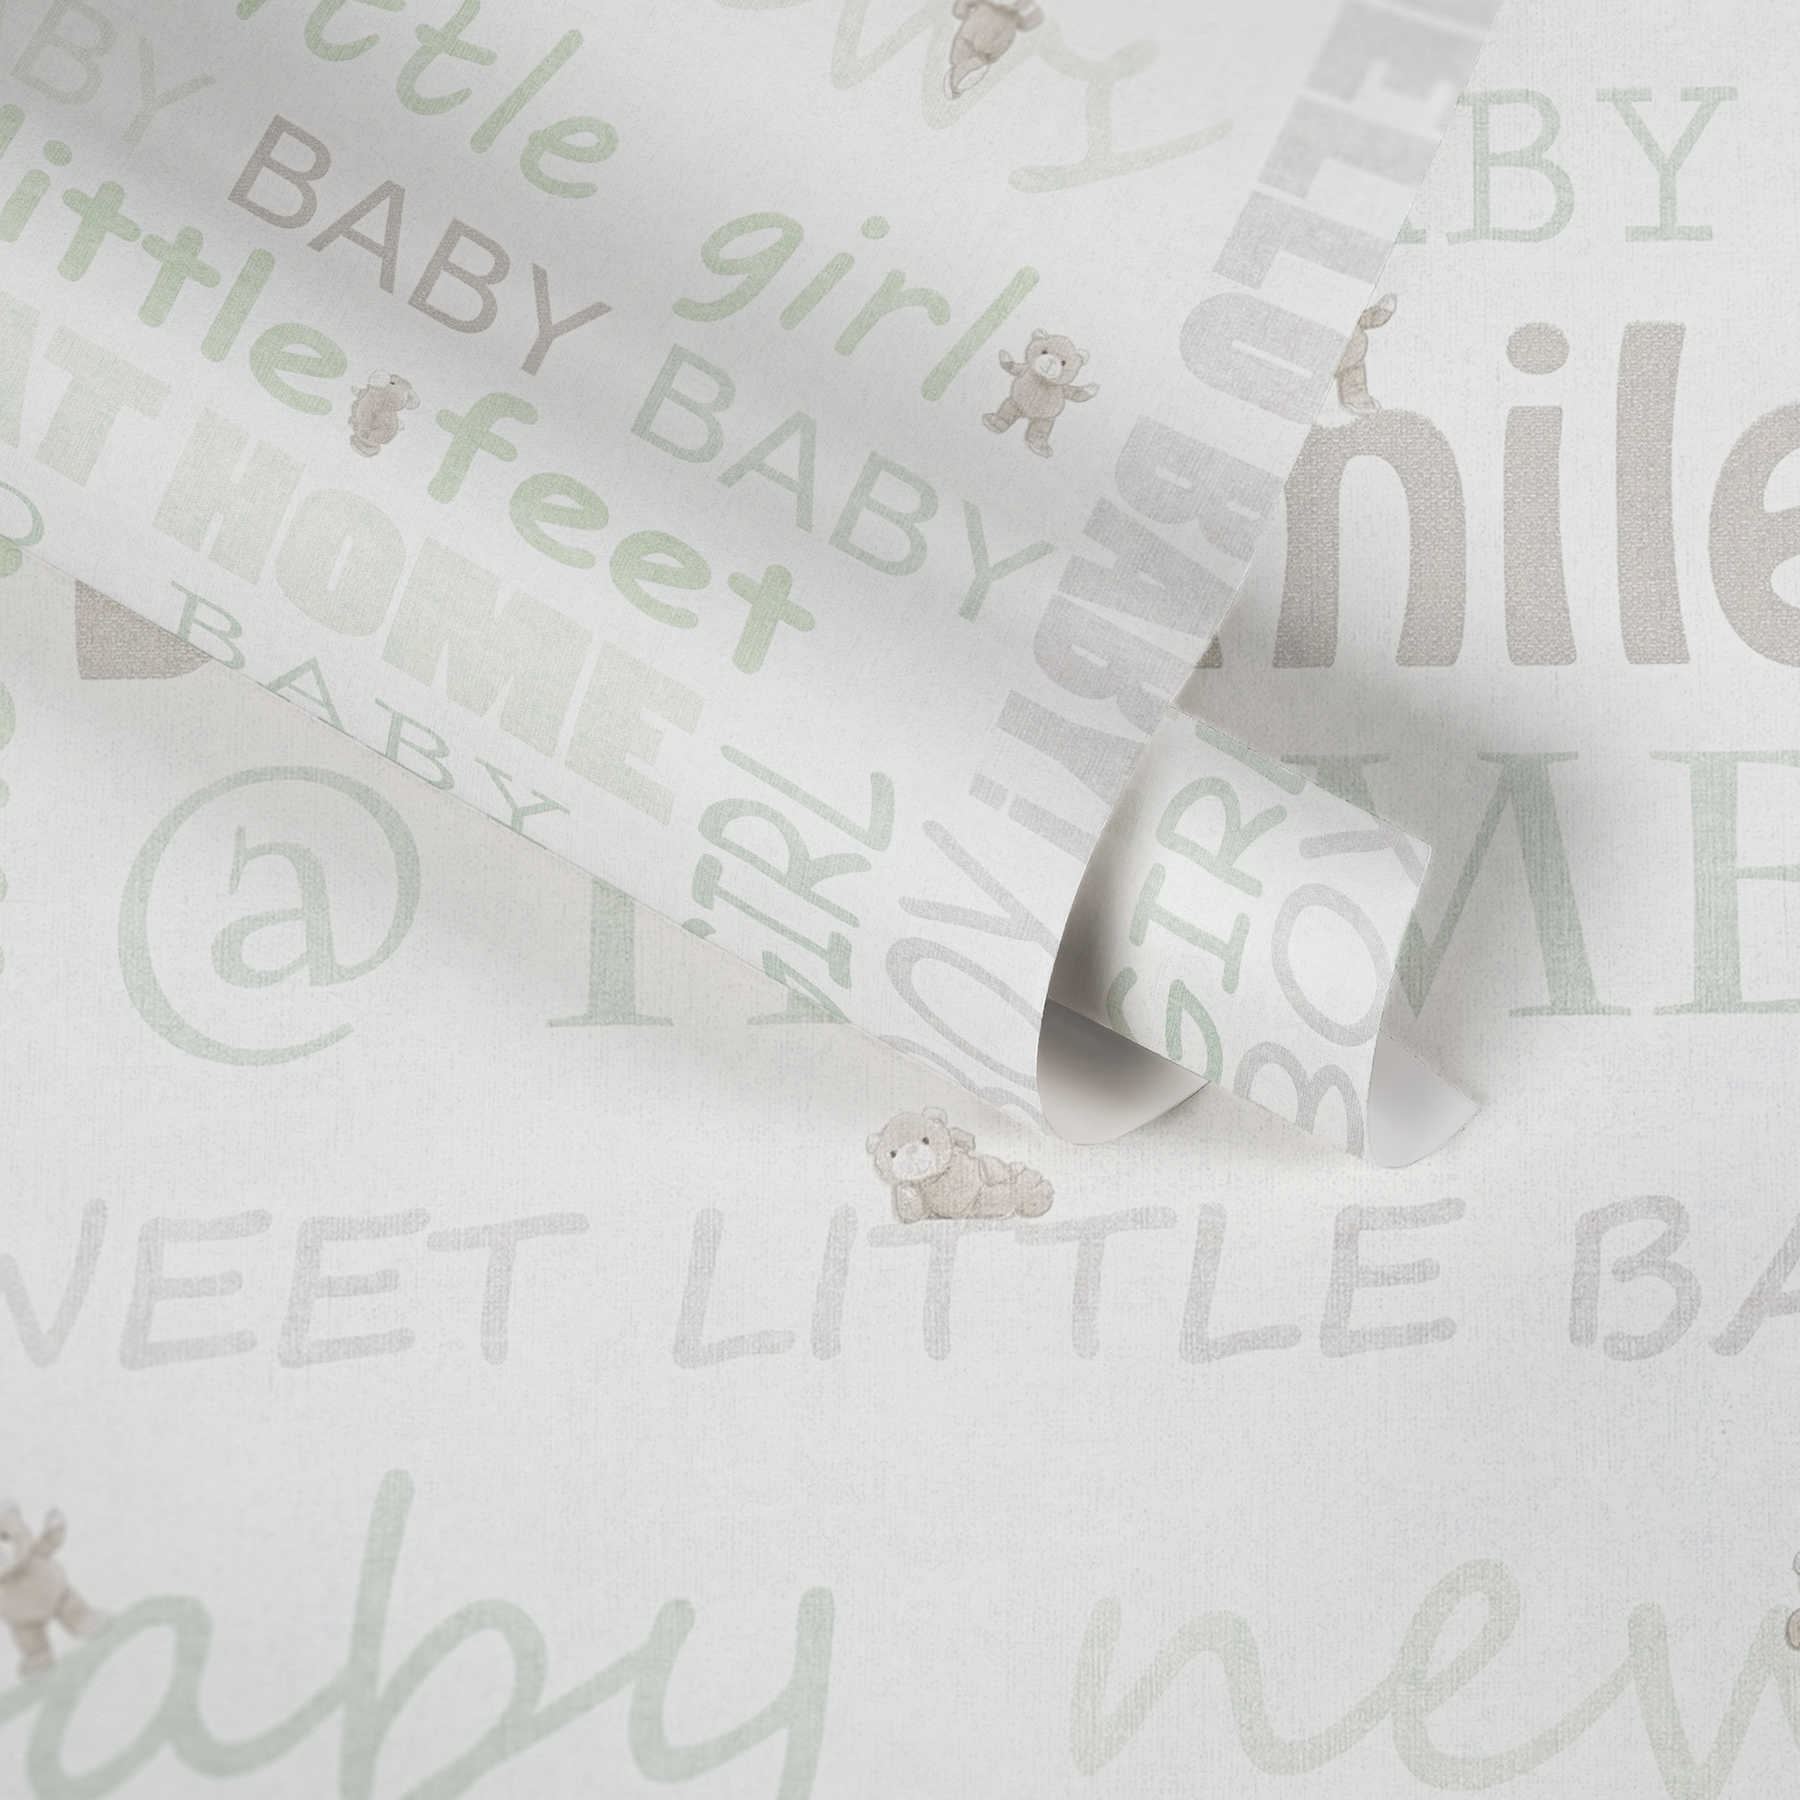             Wallpaper Nursery for boys & girls - green, white
        